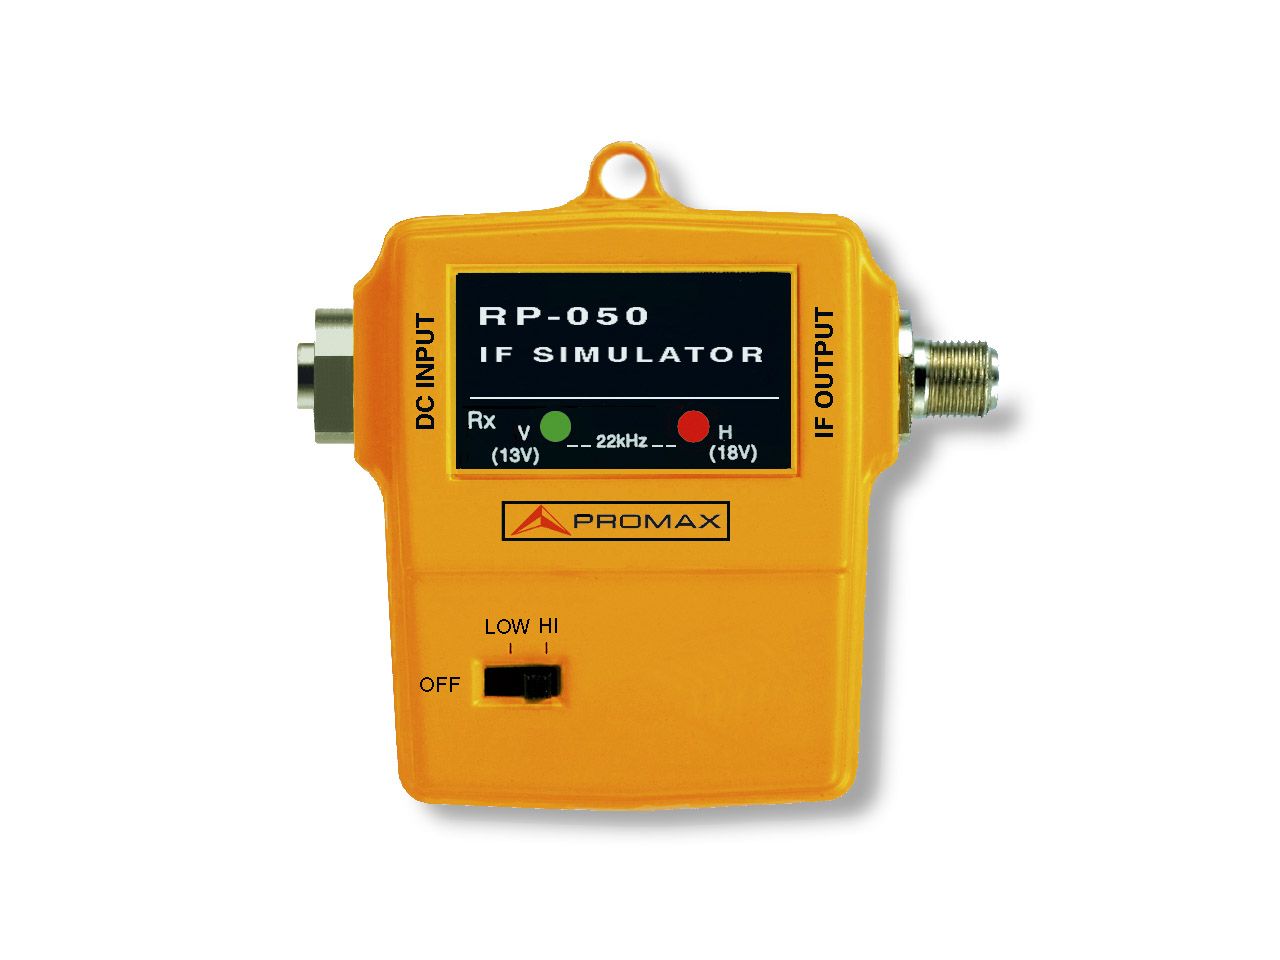 RP-050: Générateur de signaux FI et UHF